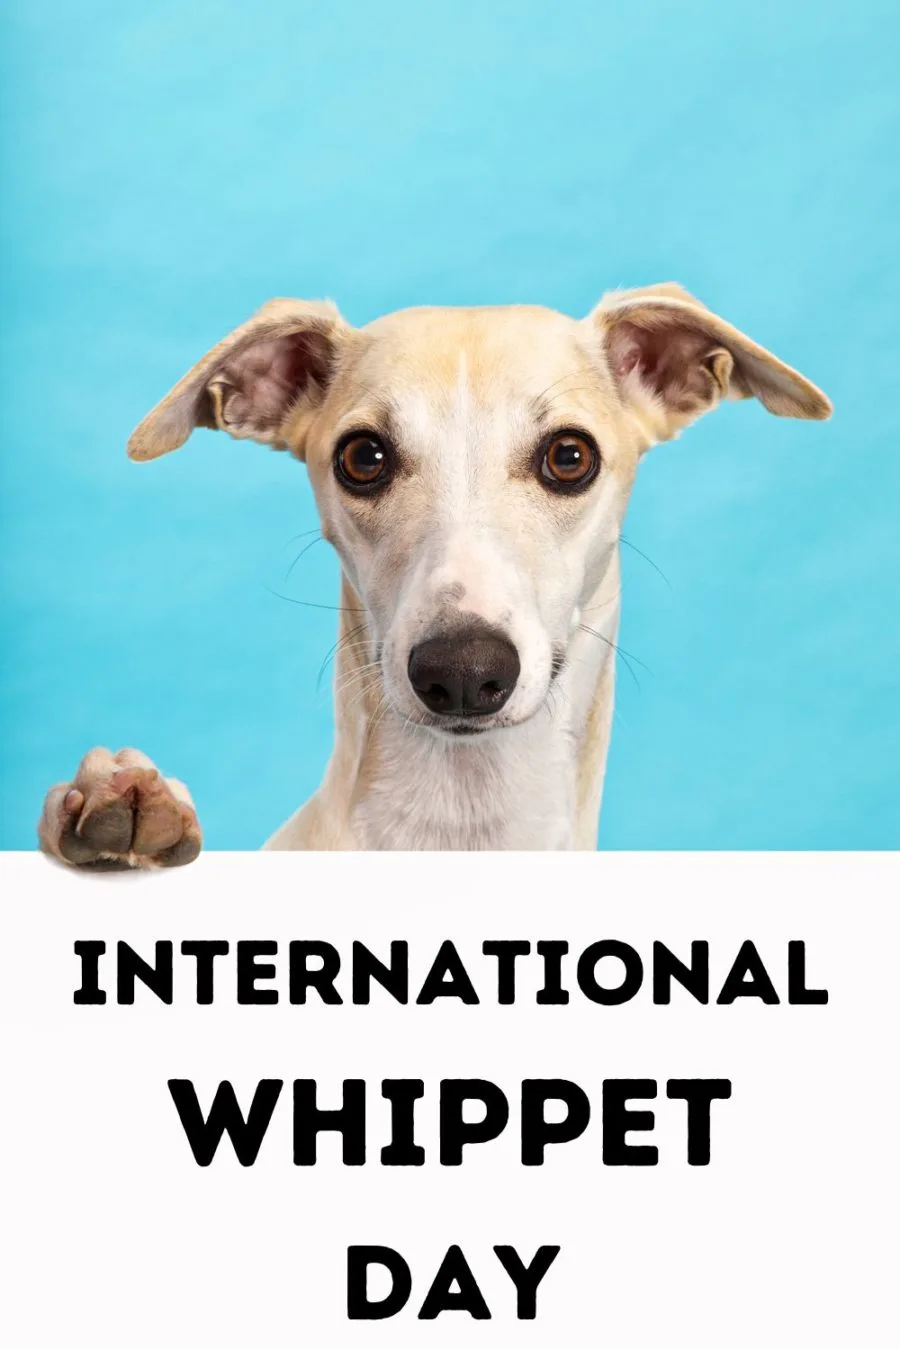 International Whippet Day